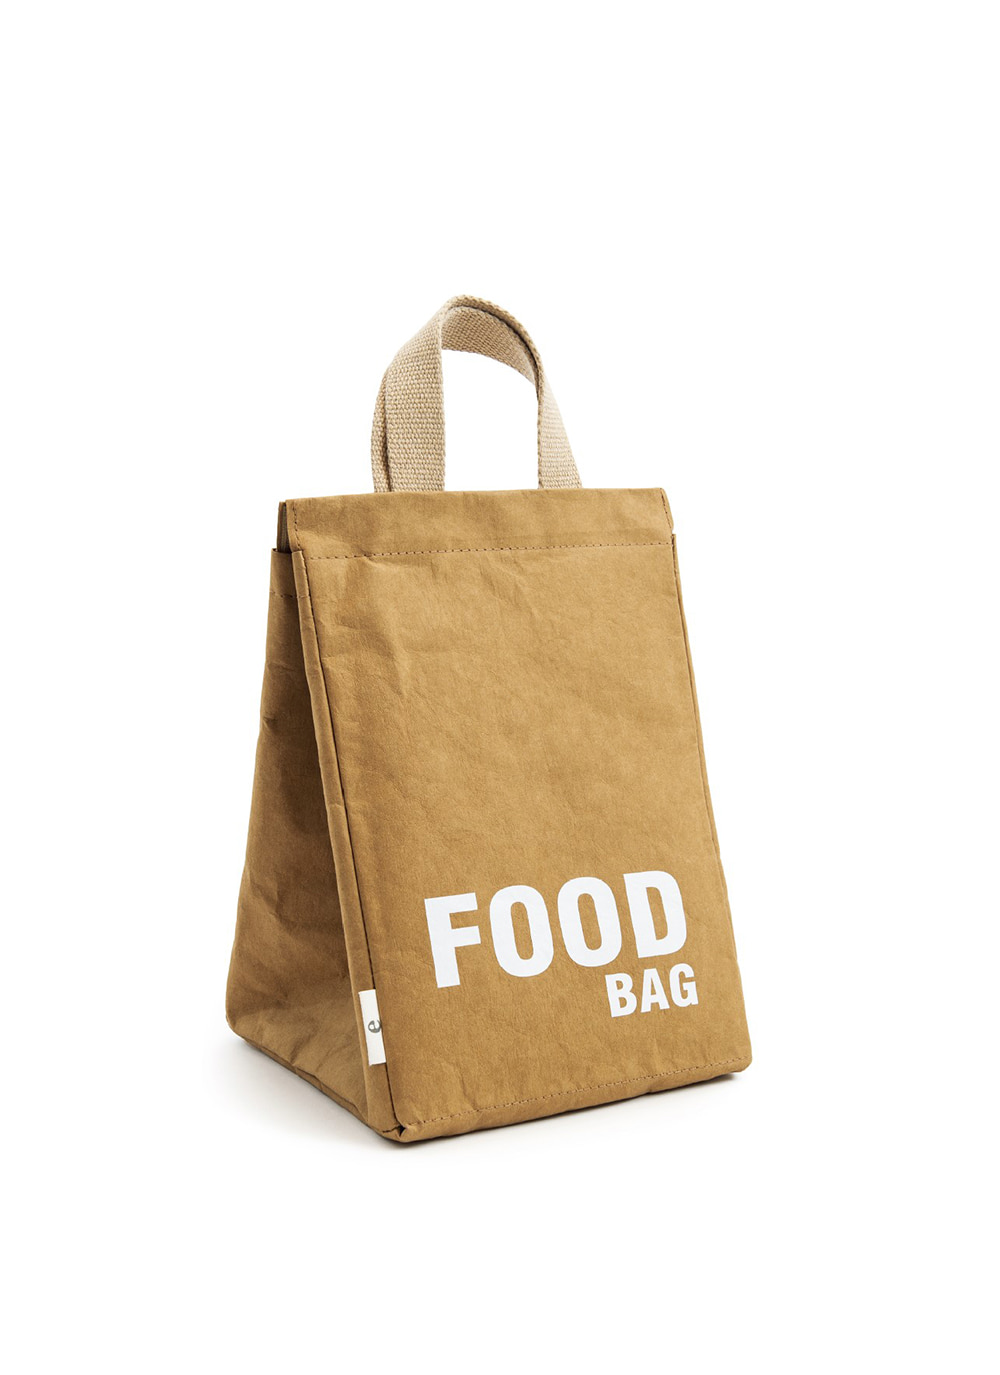 FOOD BAG